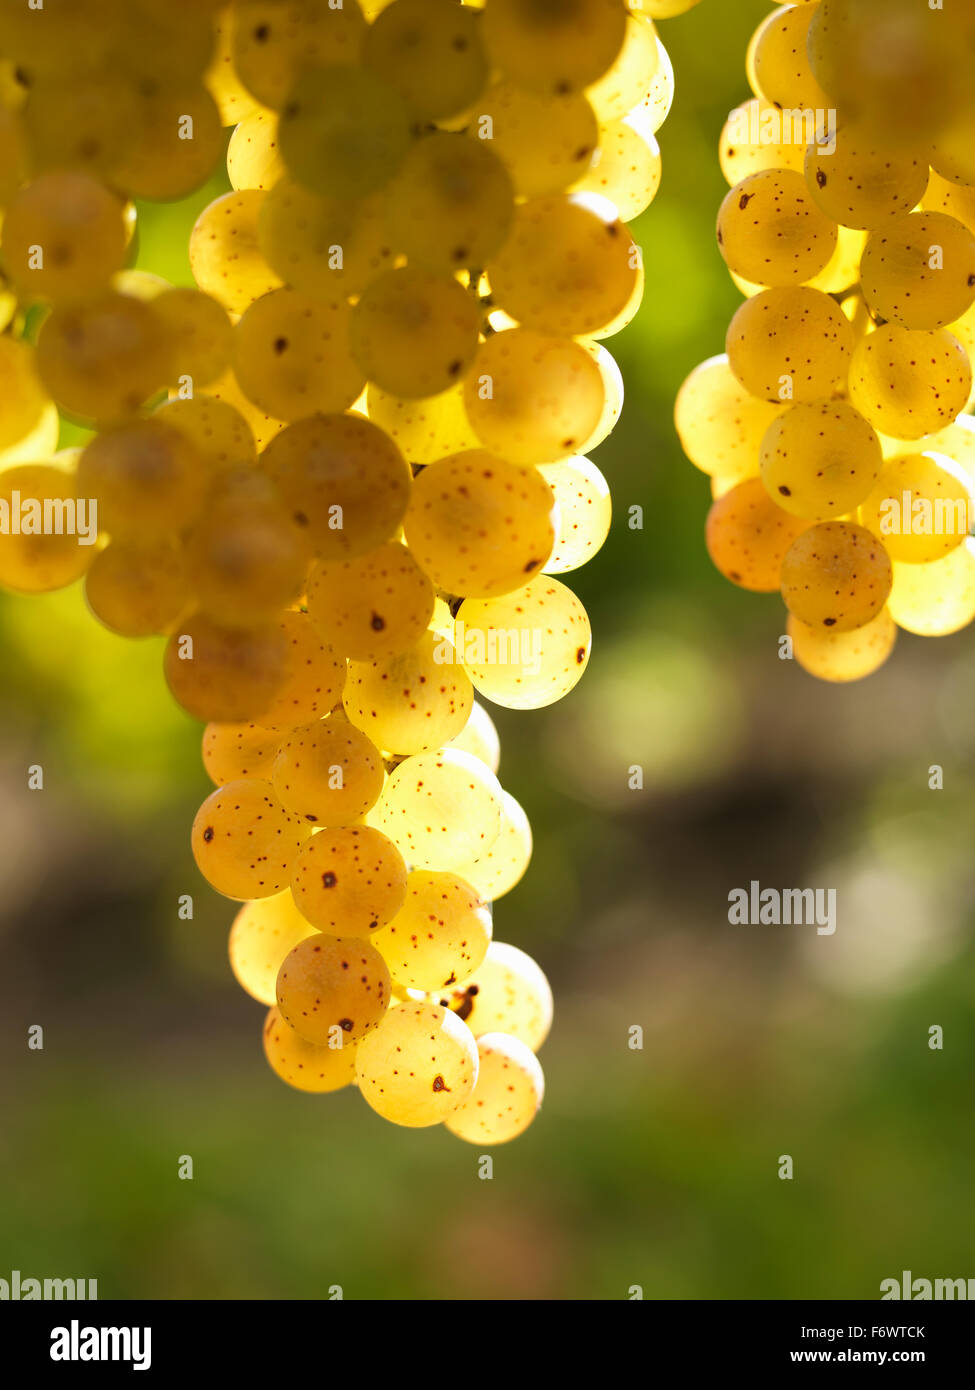 Ontario,Canadá,Niagara-on-the-Lake, uva blanca madura sobre la vid por la luz solar. Viñedo uvas para la producción de vinos blancos. Foto de stock